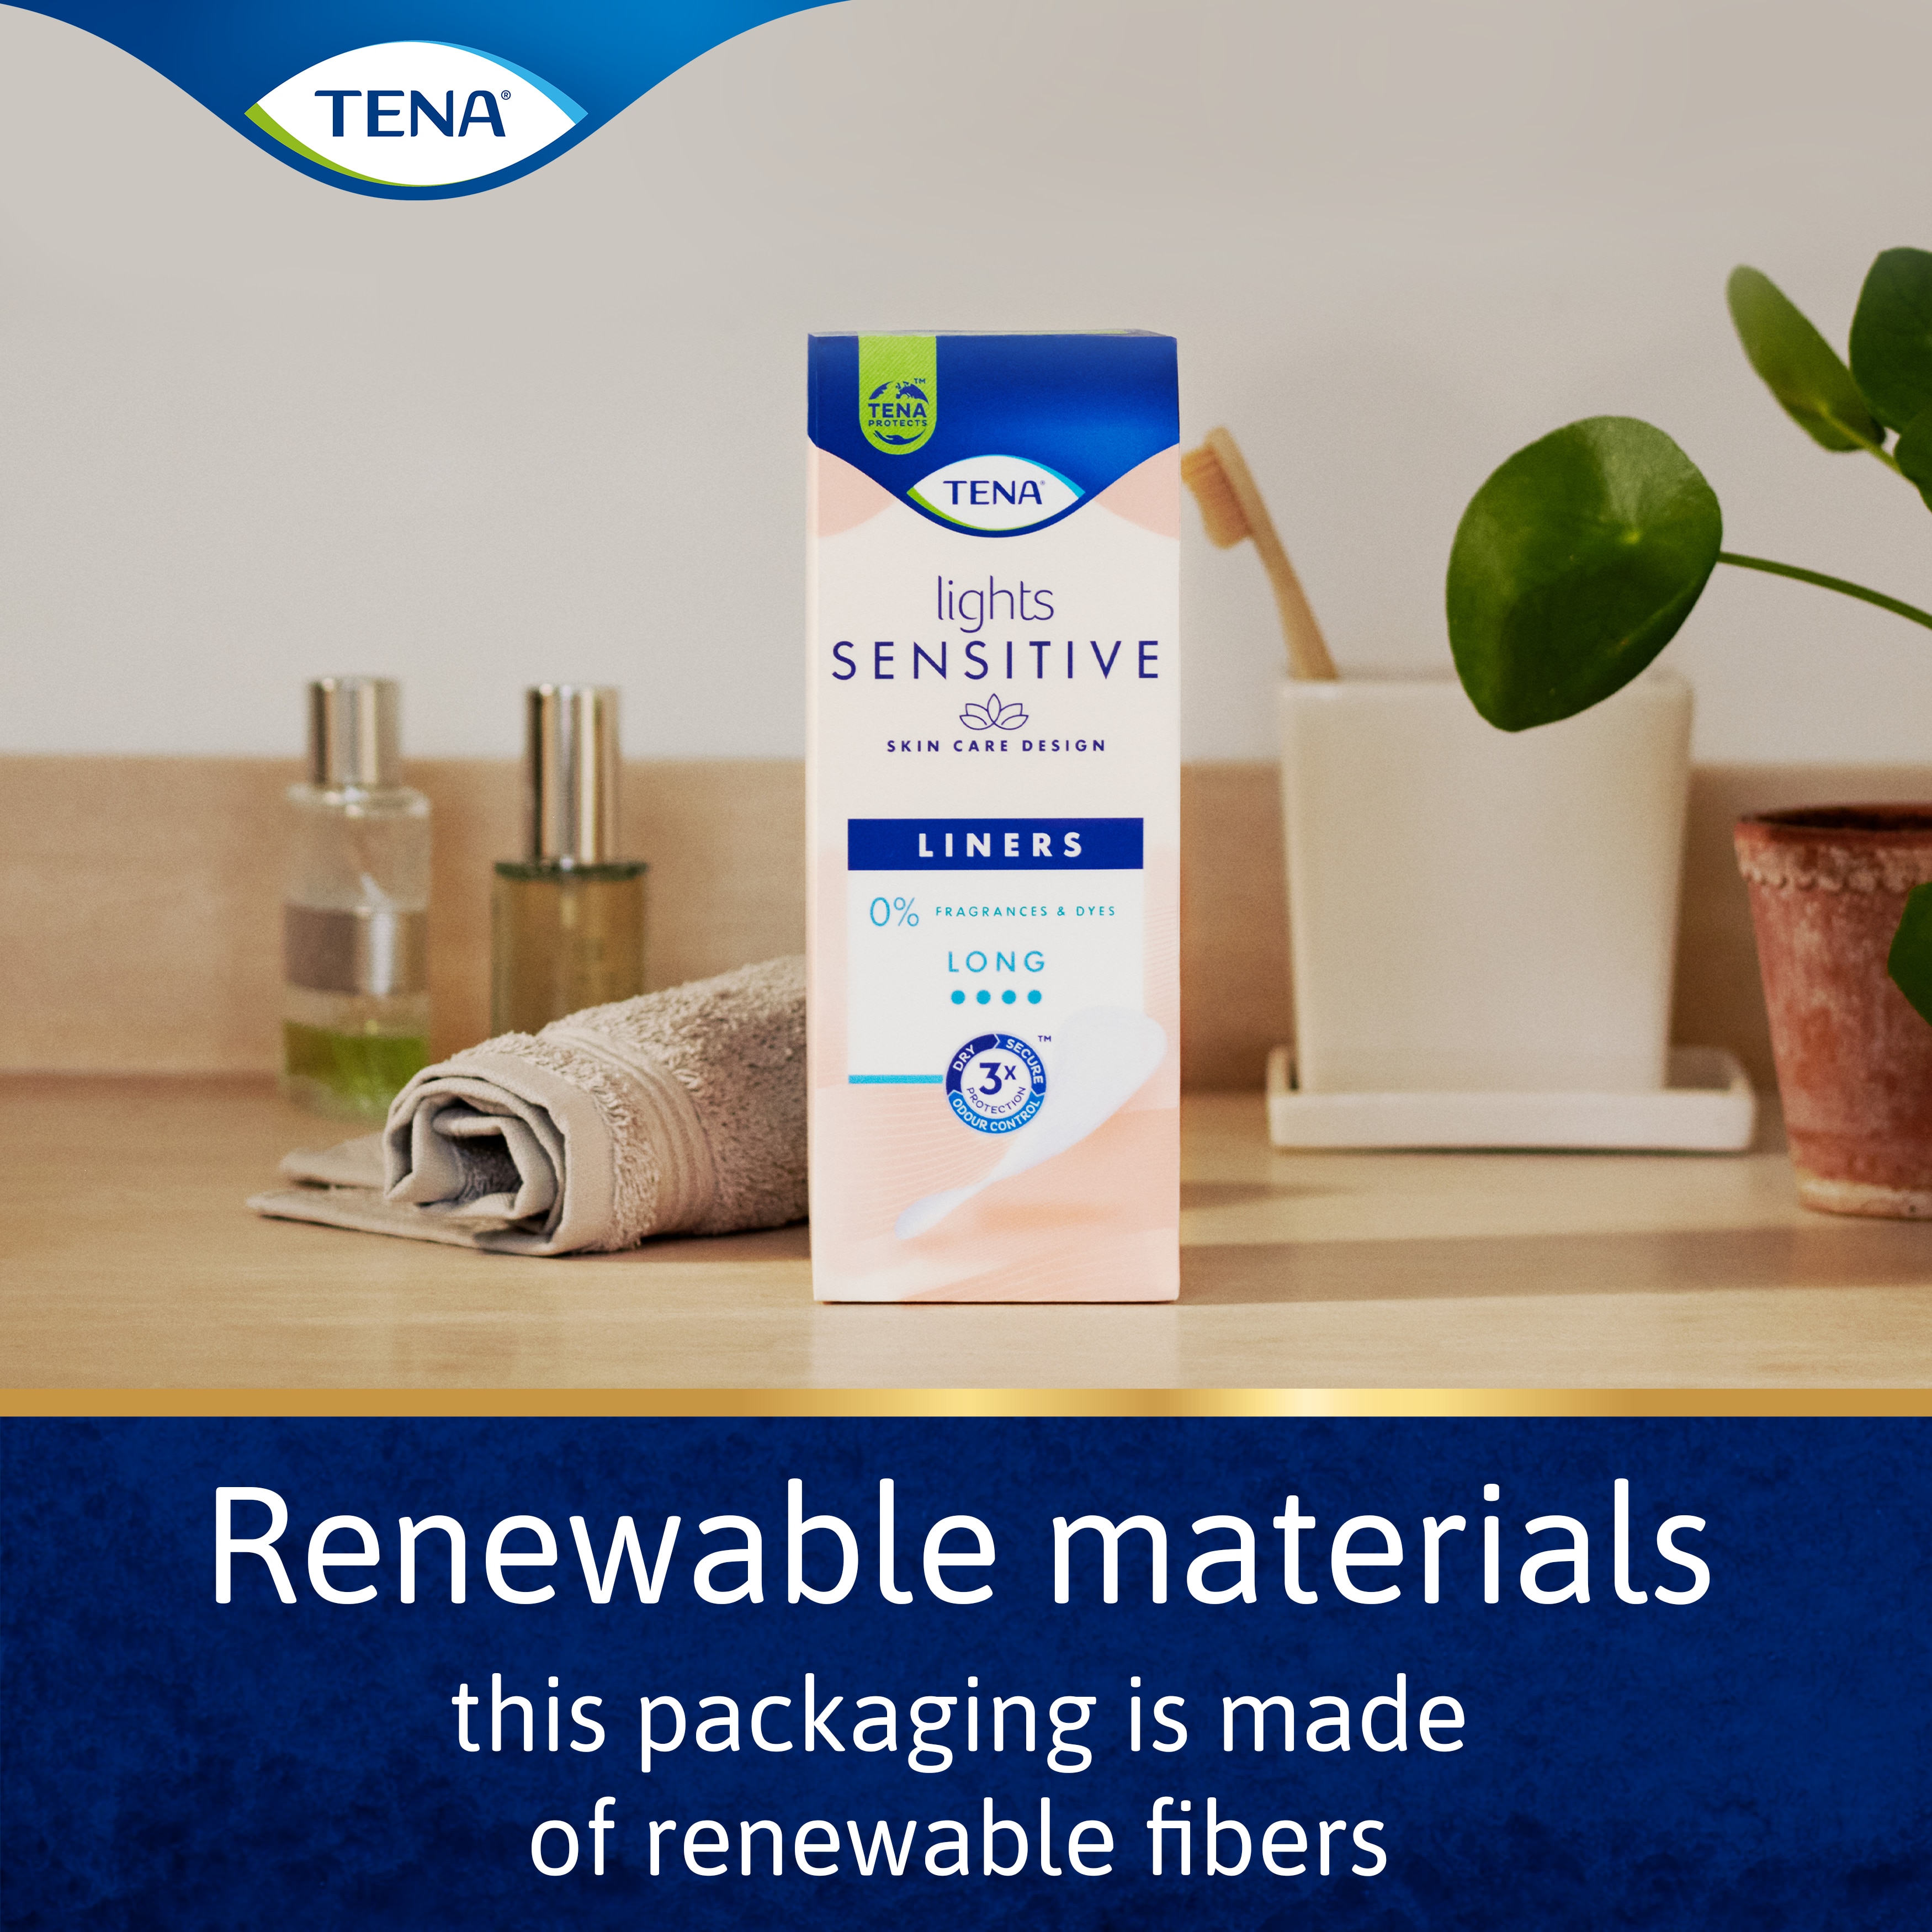 Bæredygtige materialer – denne emballage er lavet af bæredygtige fibre